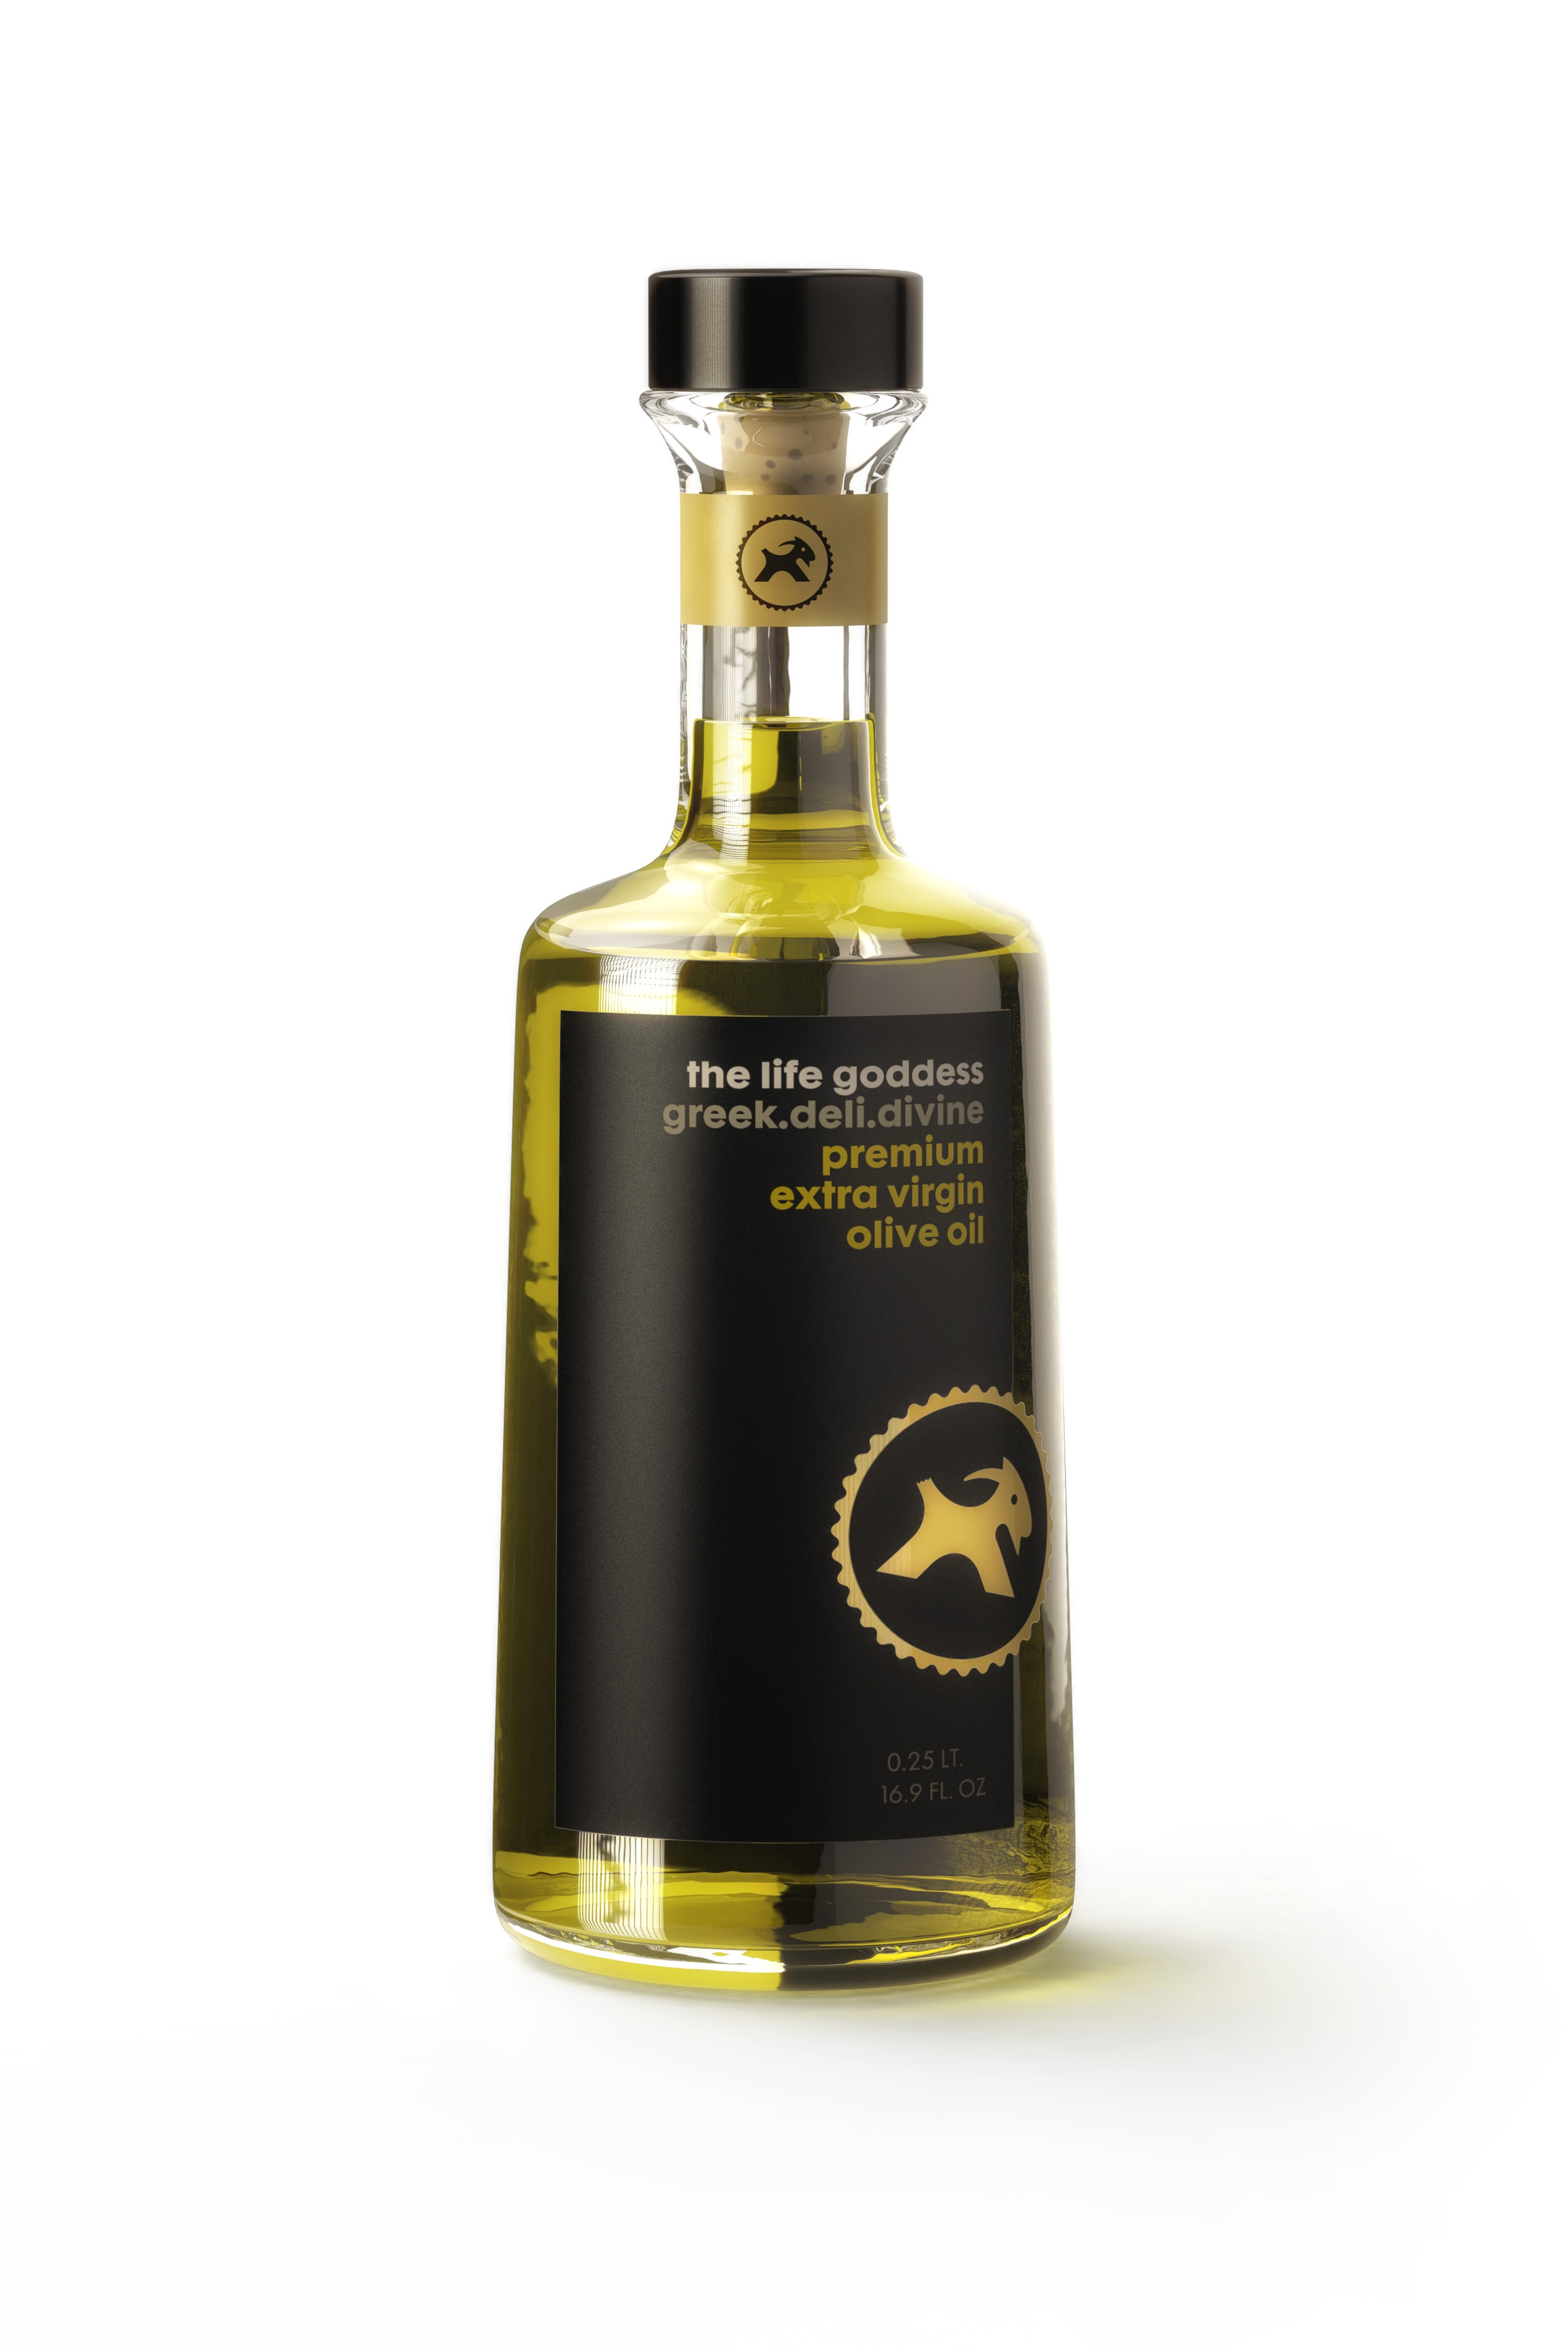 The life goddess olive oil